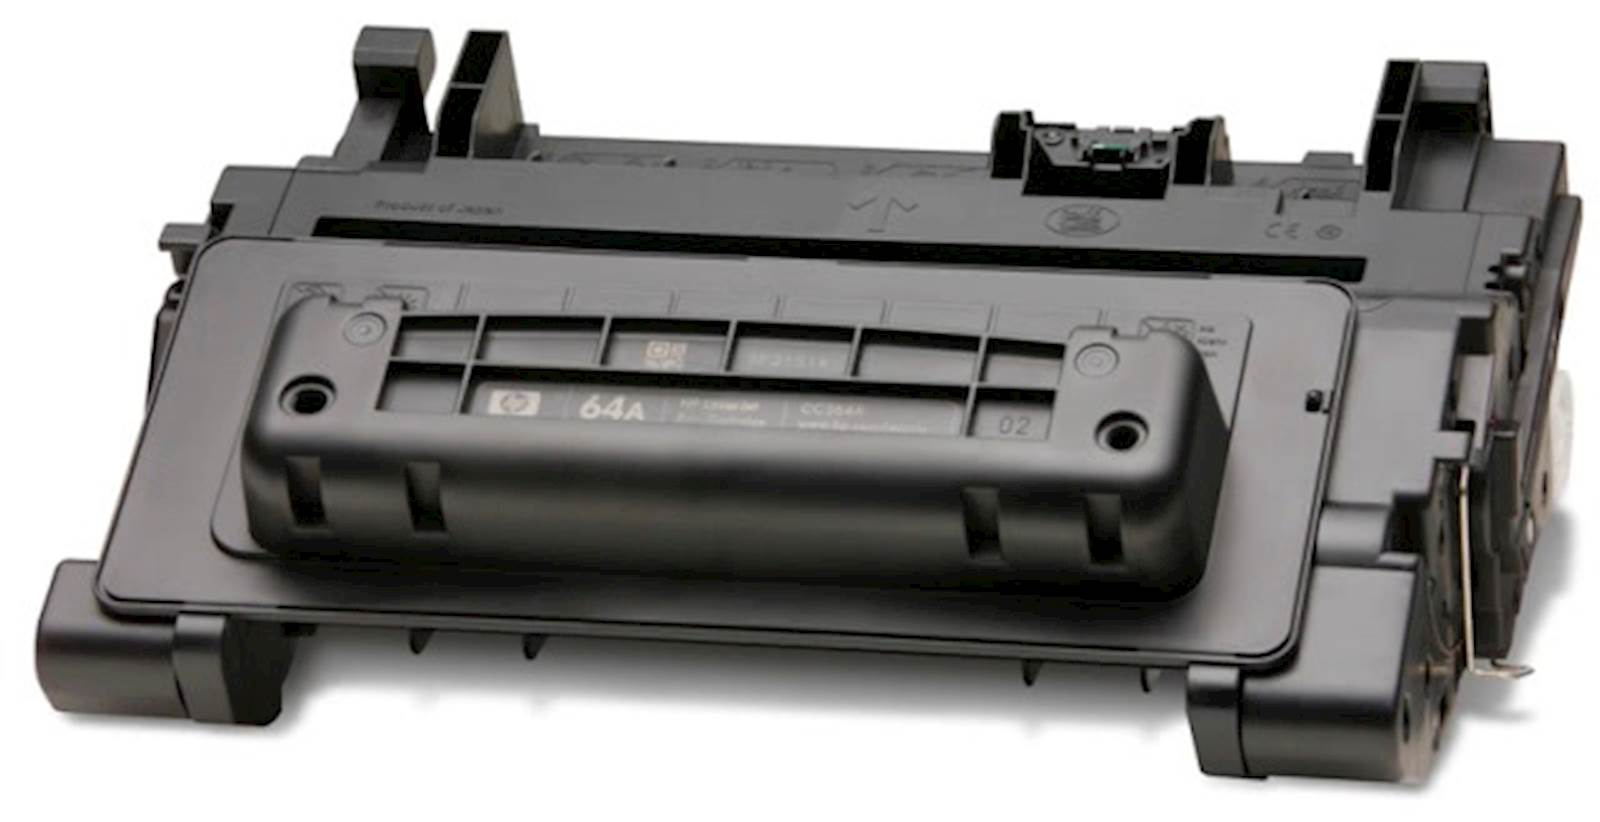 Toner HP black 64A LaserJet P4014